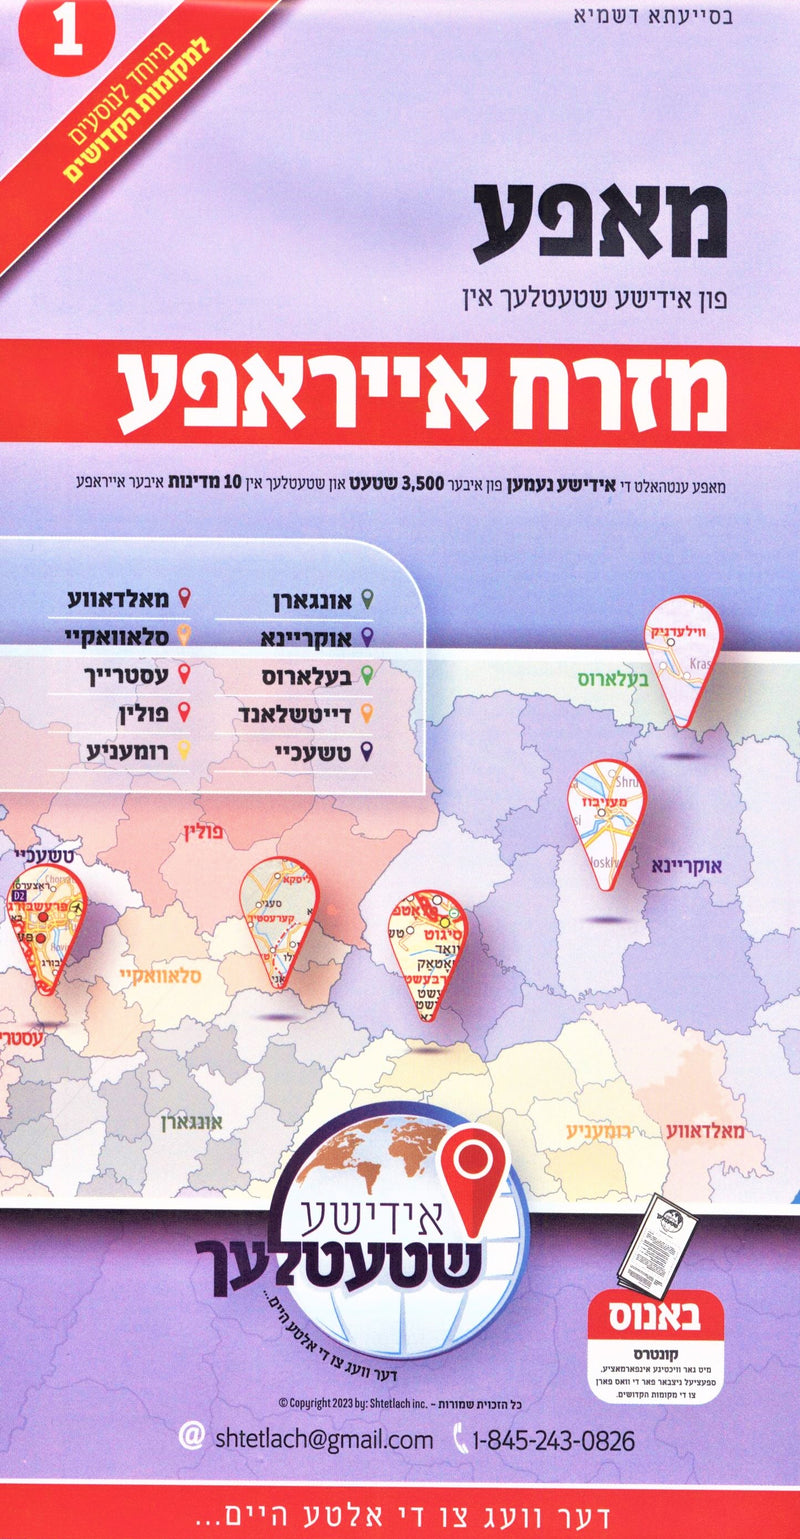 Yiddish Eastern Europe Map (1)